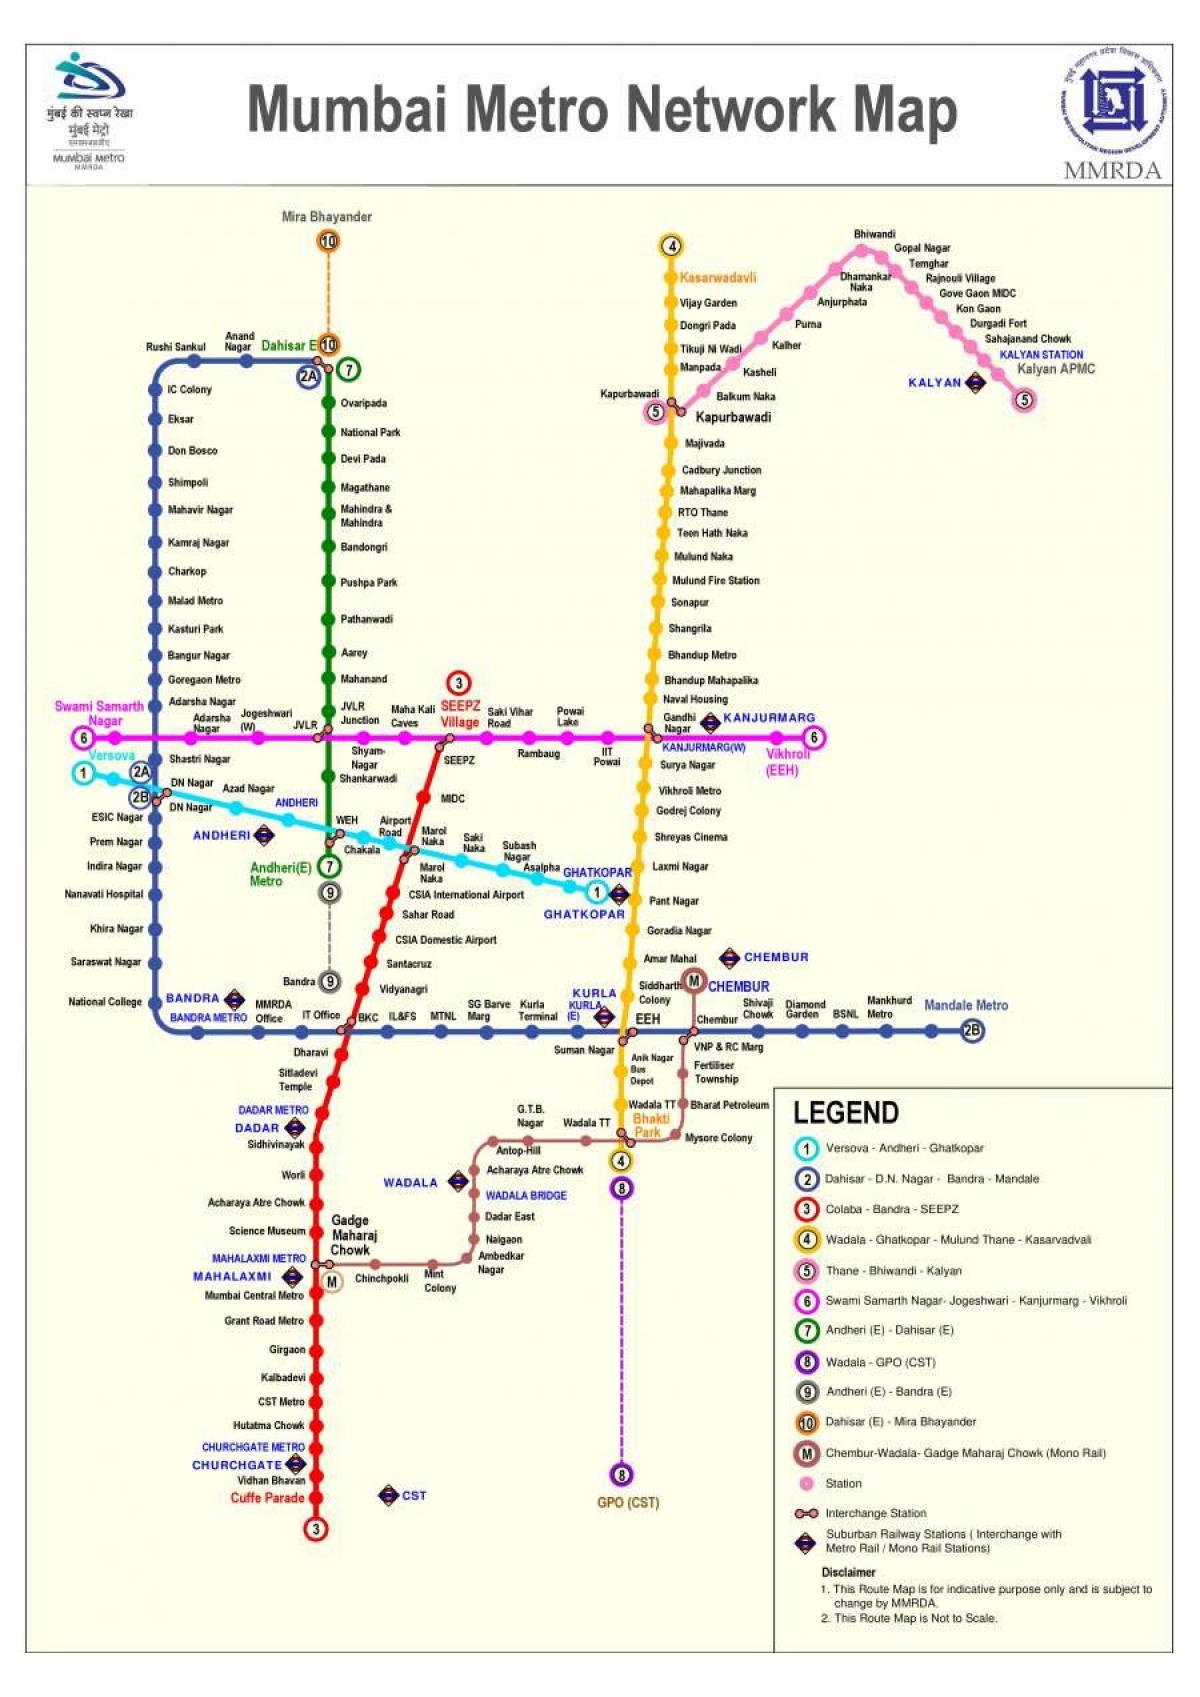 Карта станций метро Мумбаи - Бомбей